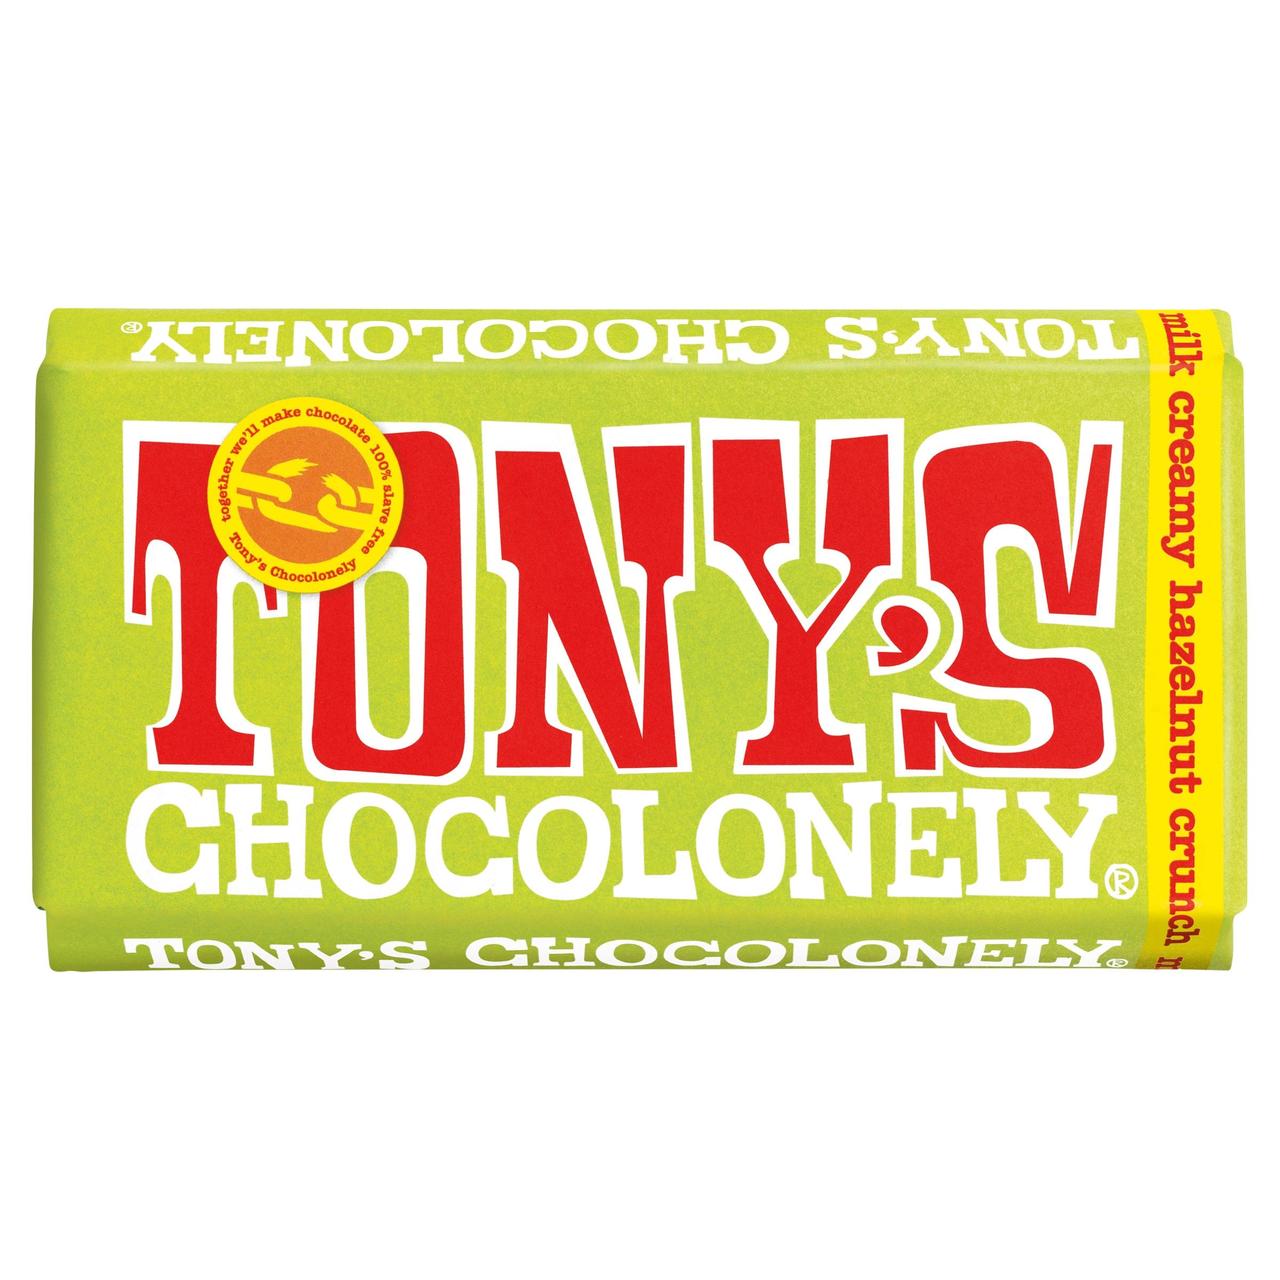 Tony's Chocolonely Milk Chocolate Creamy Hazelnut 180g